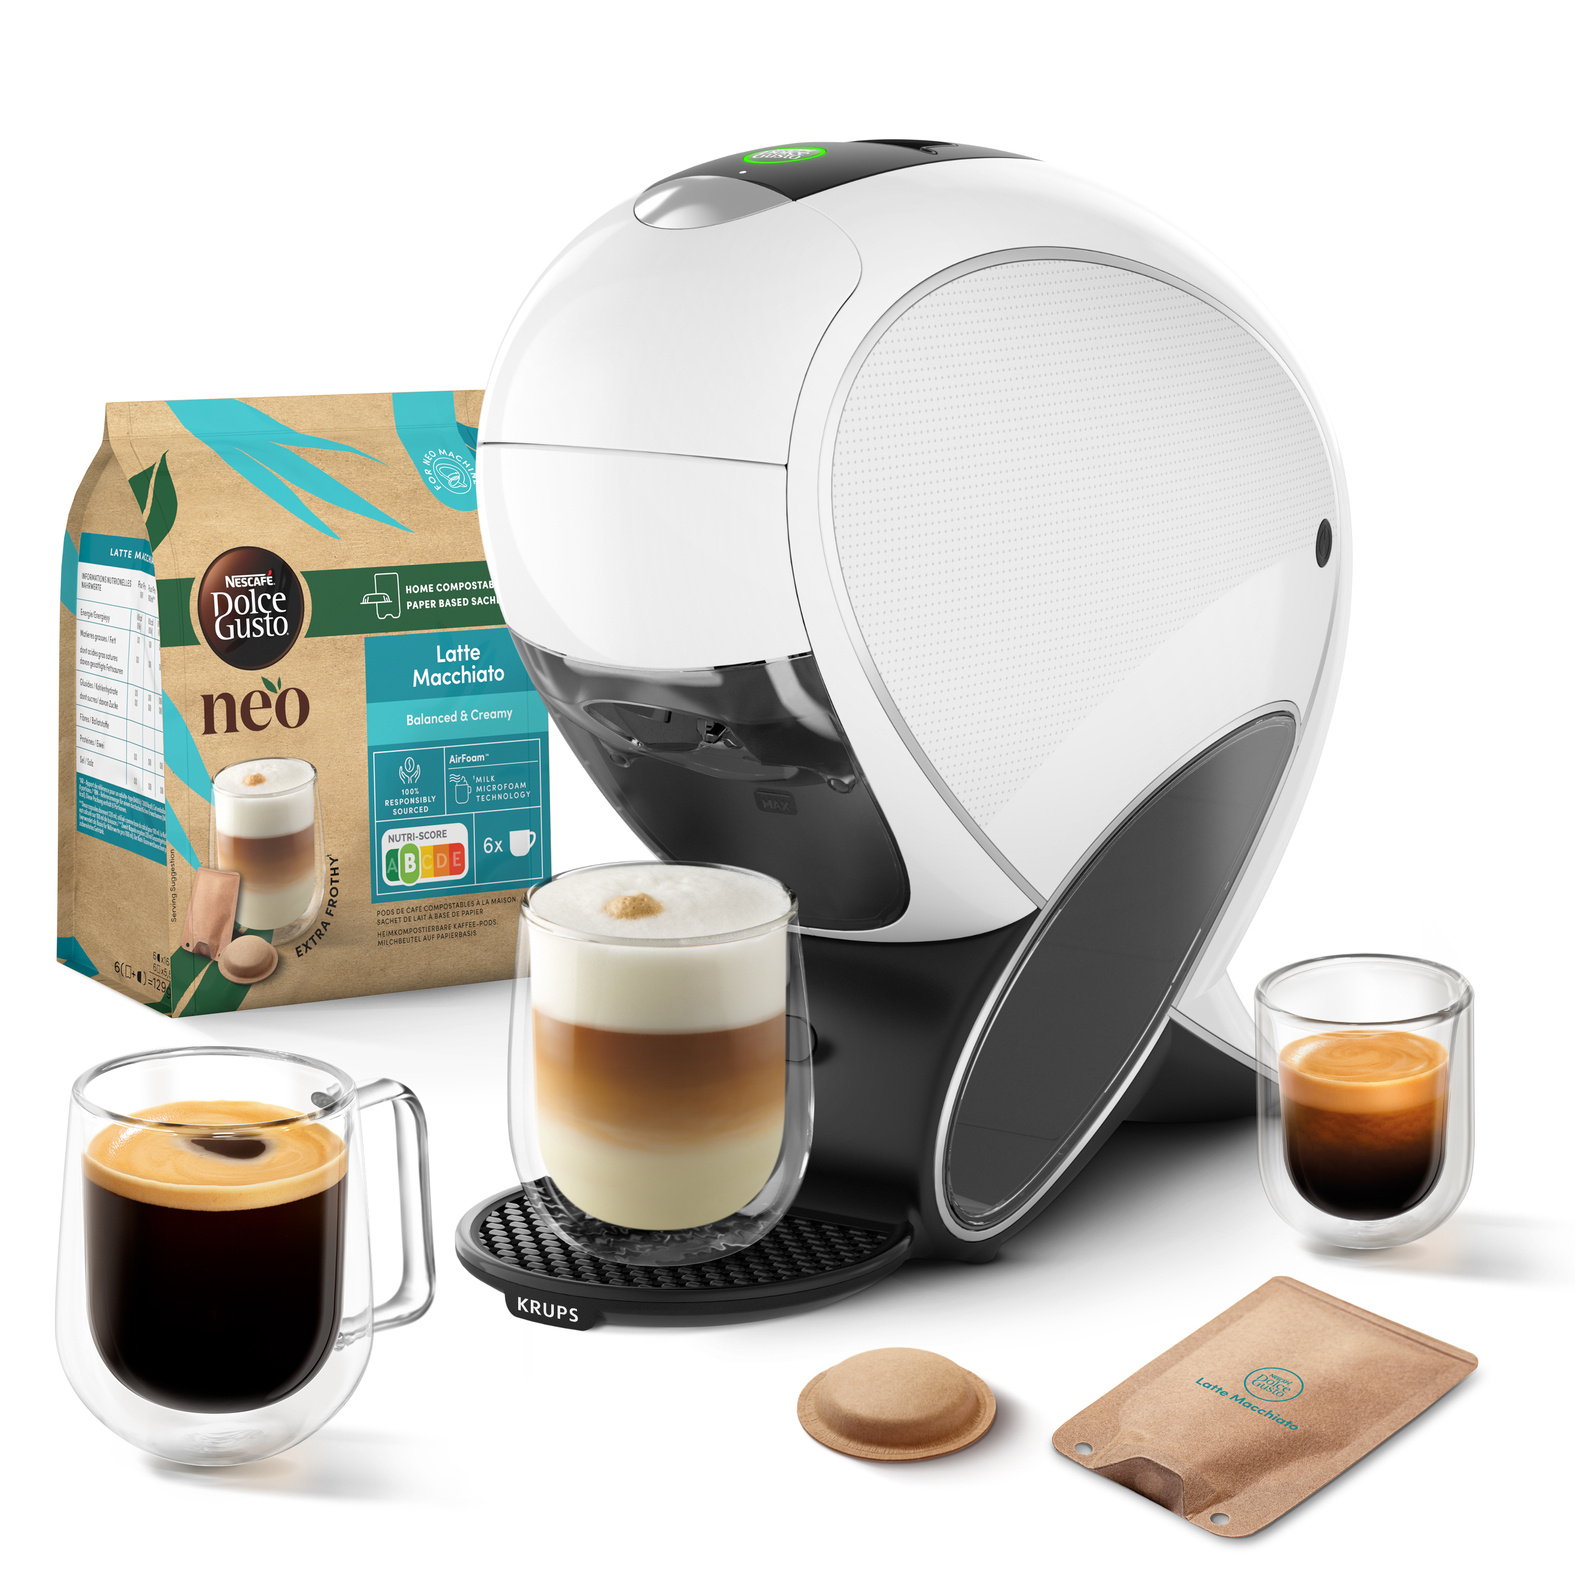 Machine à café Dolce Gusto NEO Krups + 3 boites de dosettes compostables –